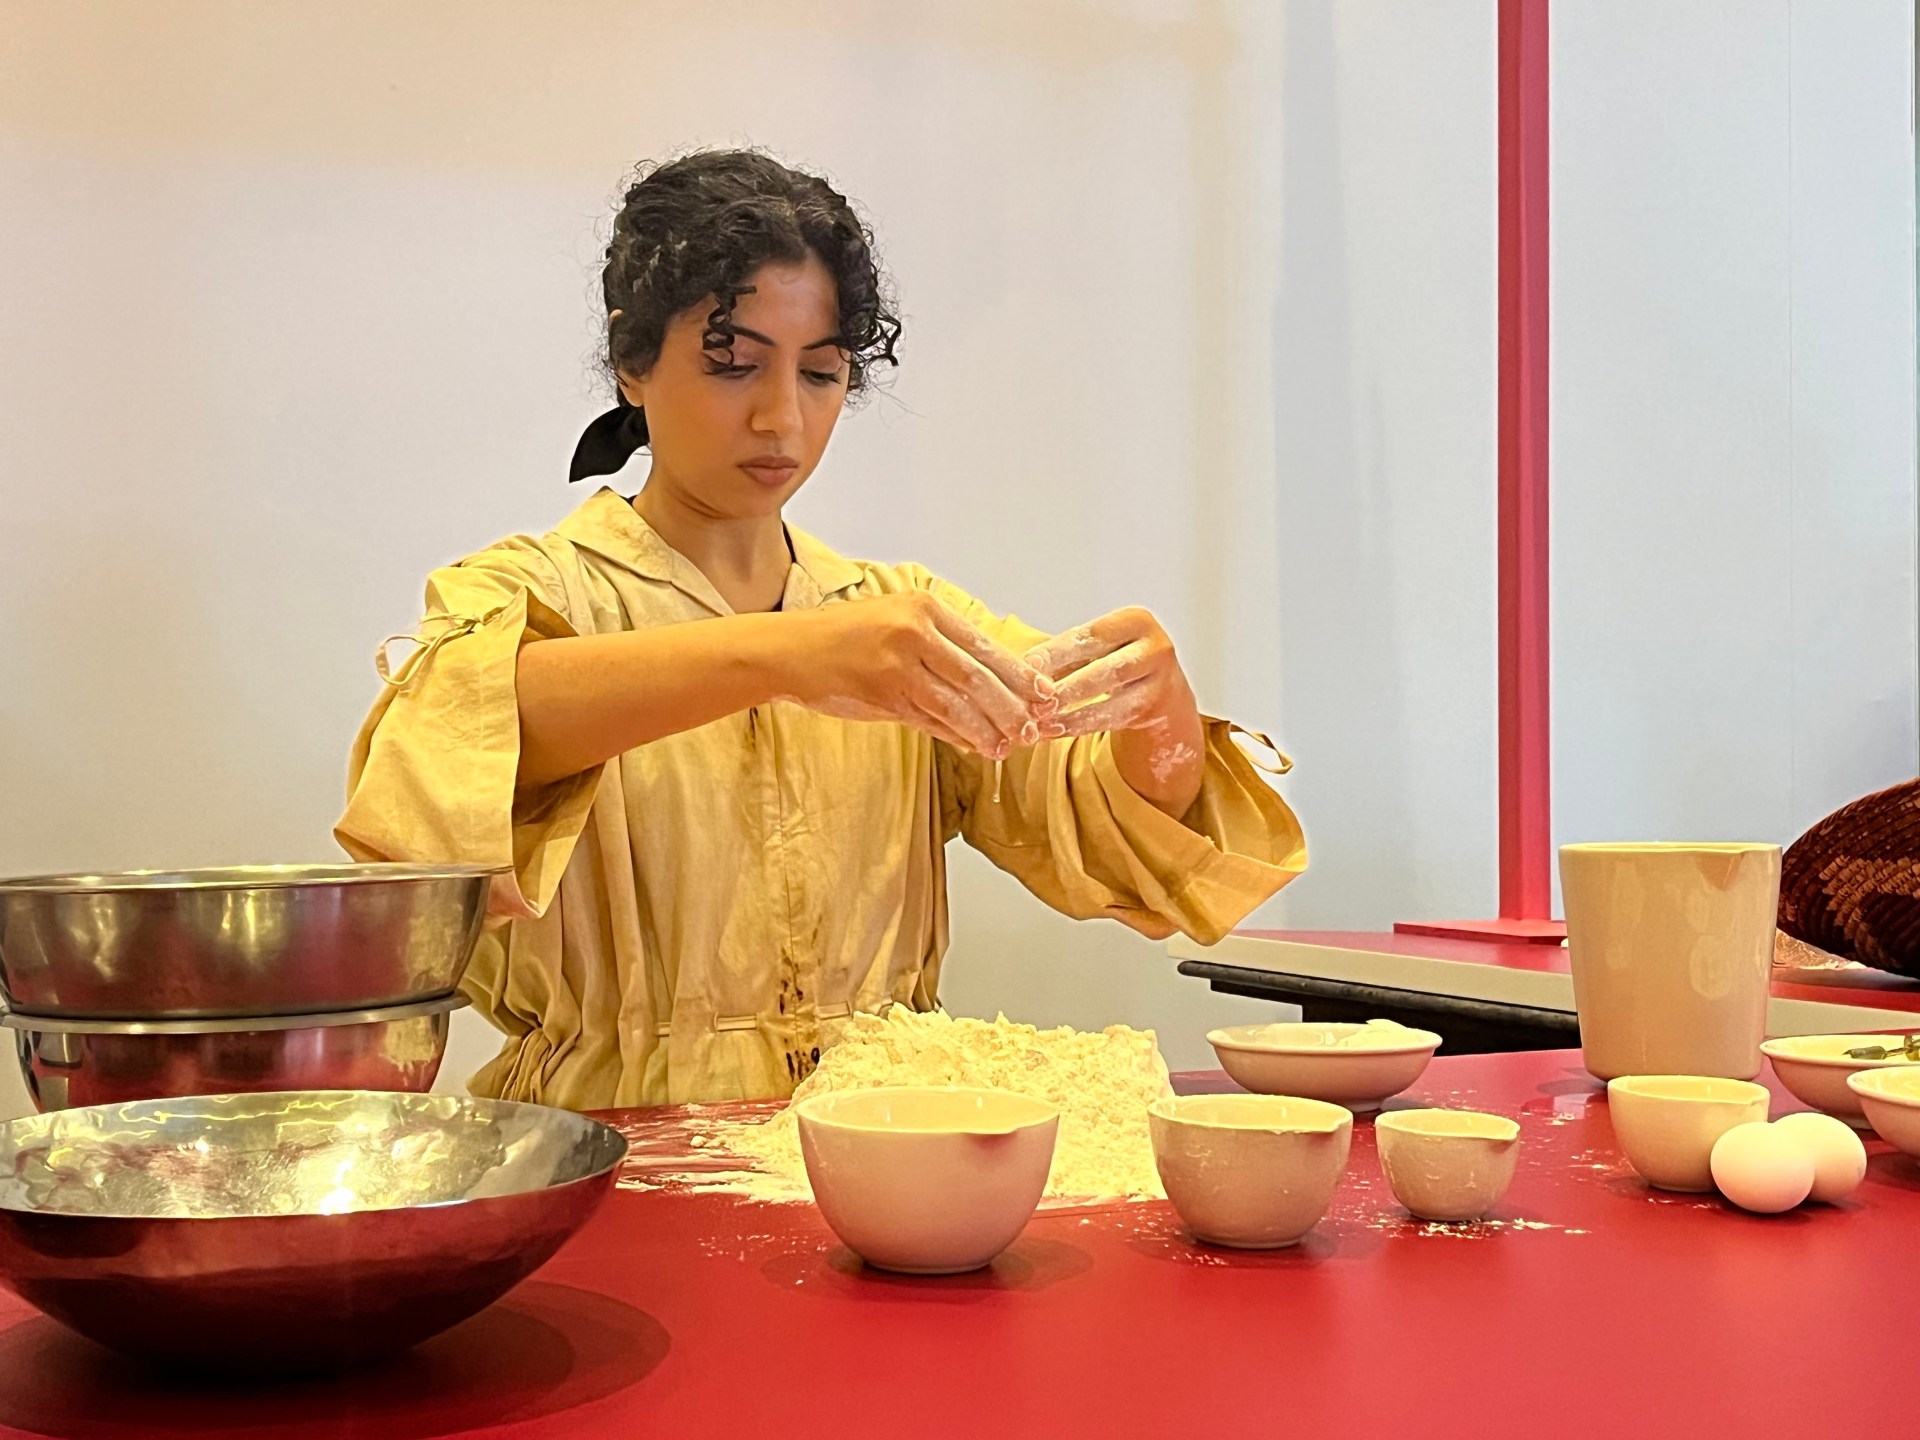 الخبز والجسد: الفنانة الإماراتية موزة المطروشي تستكشف الطعام والروح |  الفنون والثقافة